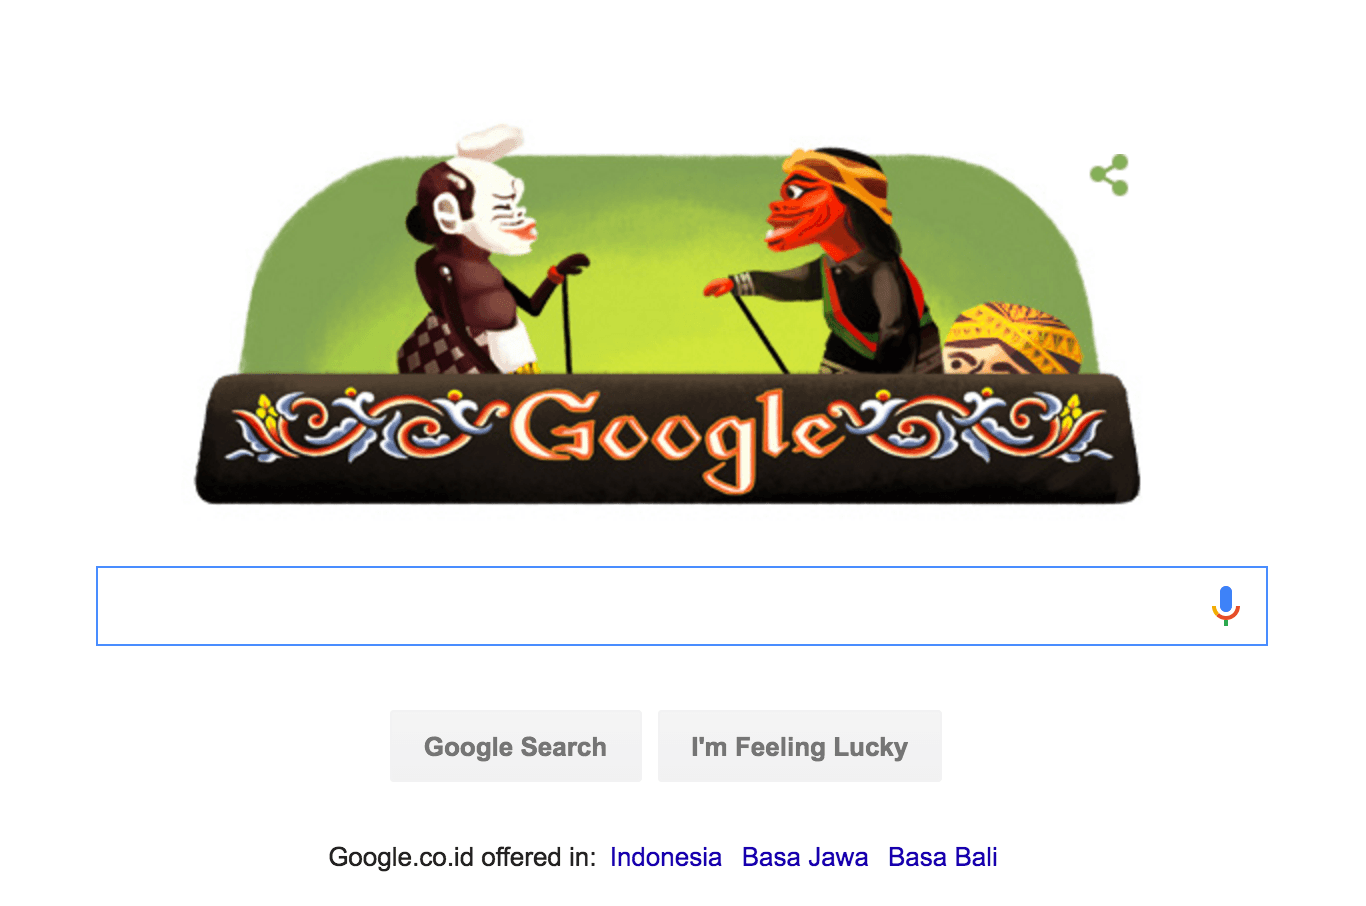 Siapa Asep Sunandar yang terpilih jadi Google Doodle?